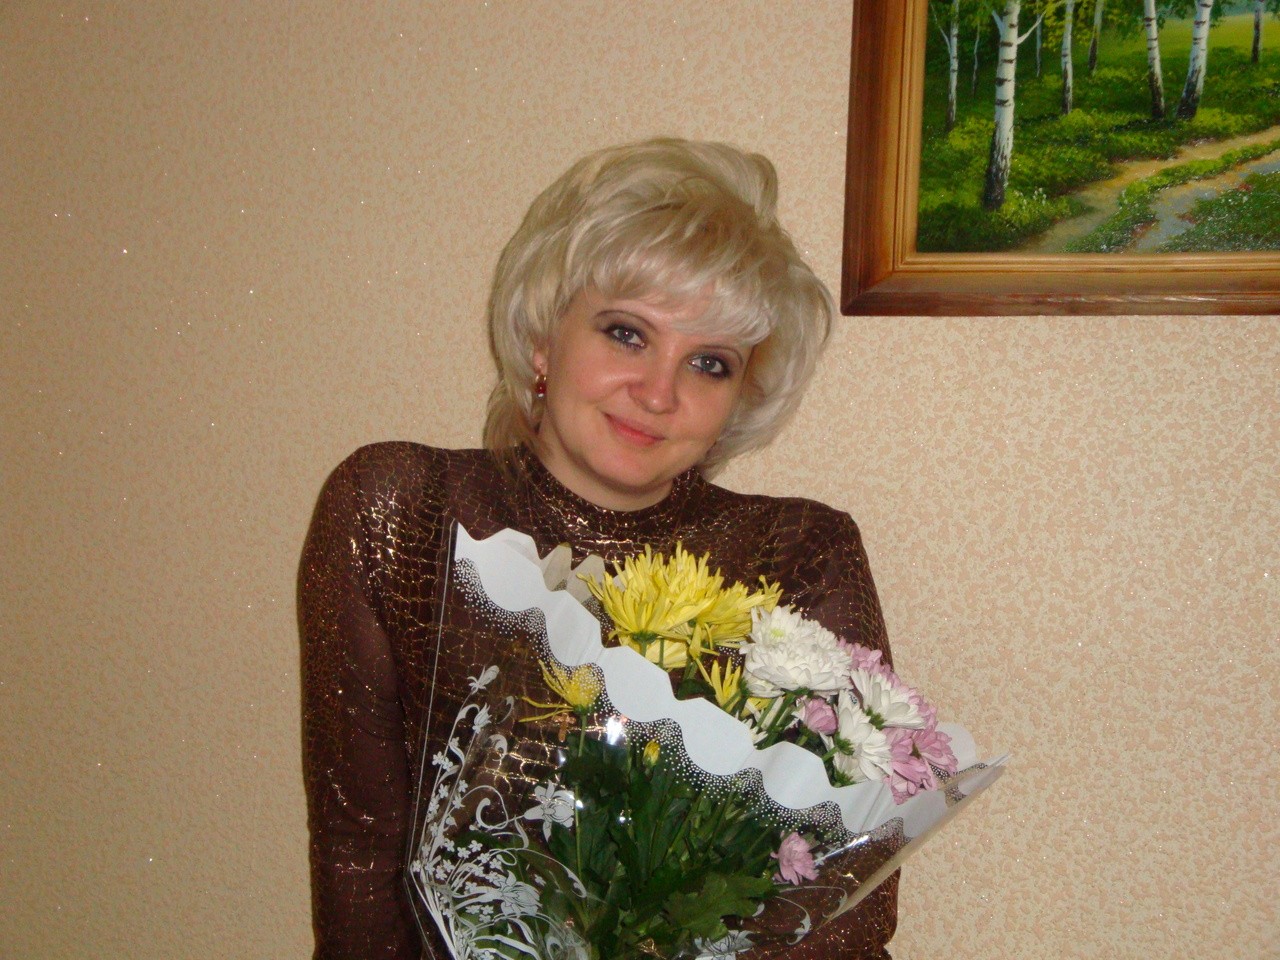 Иванова Наталья Геннадьевна